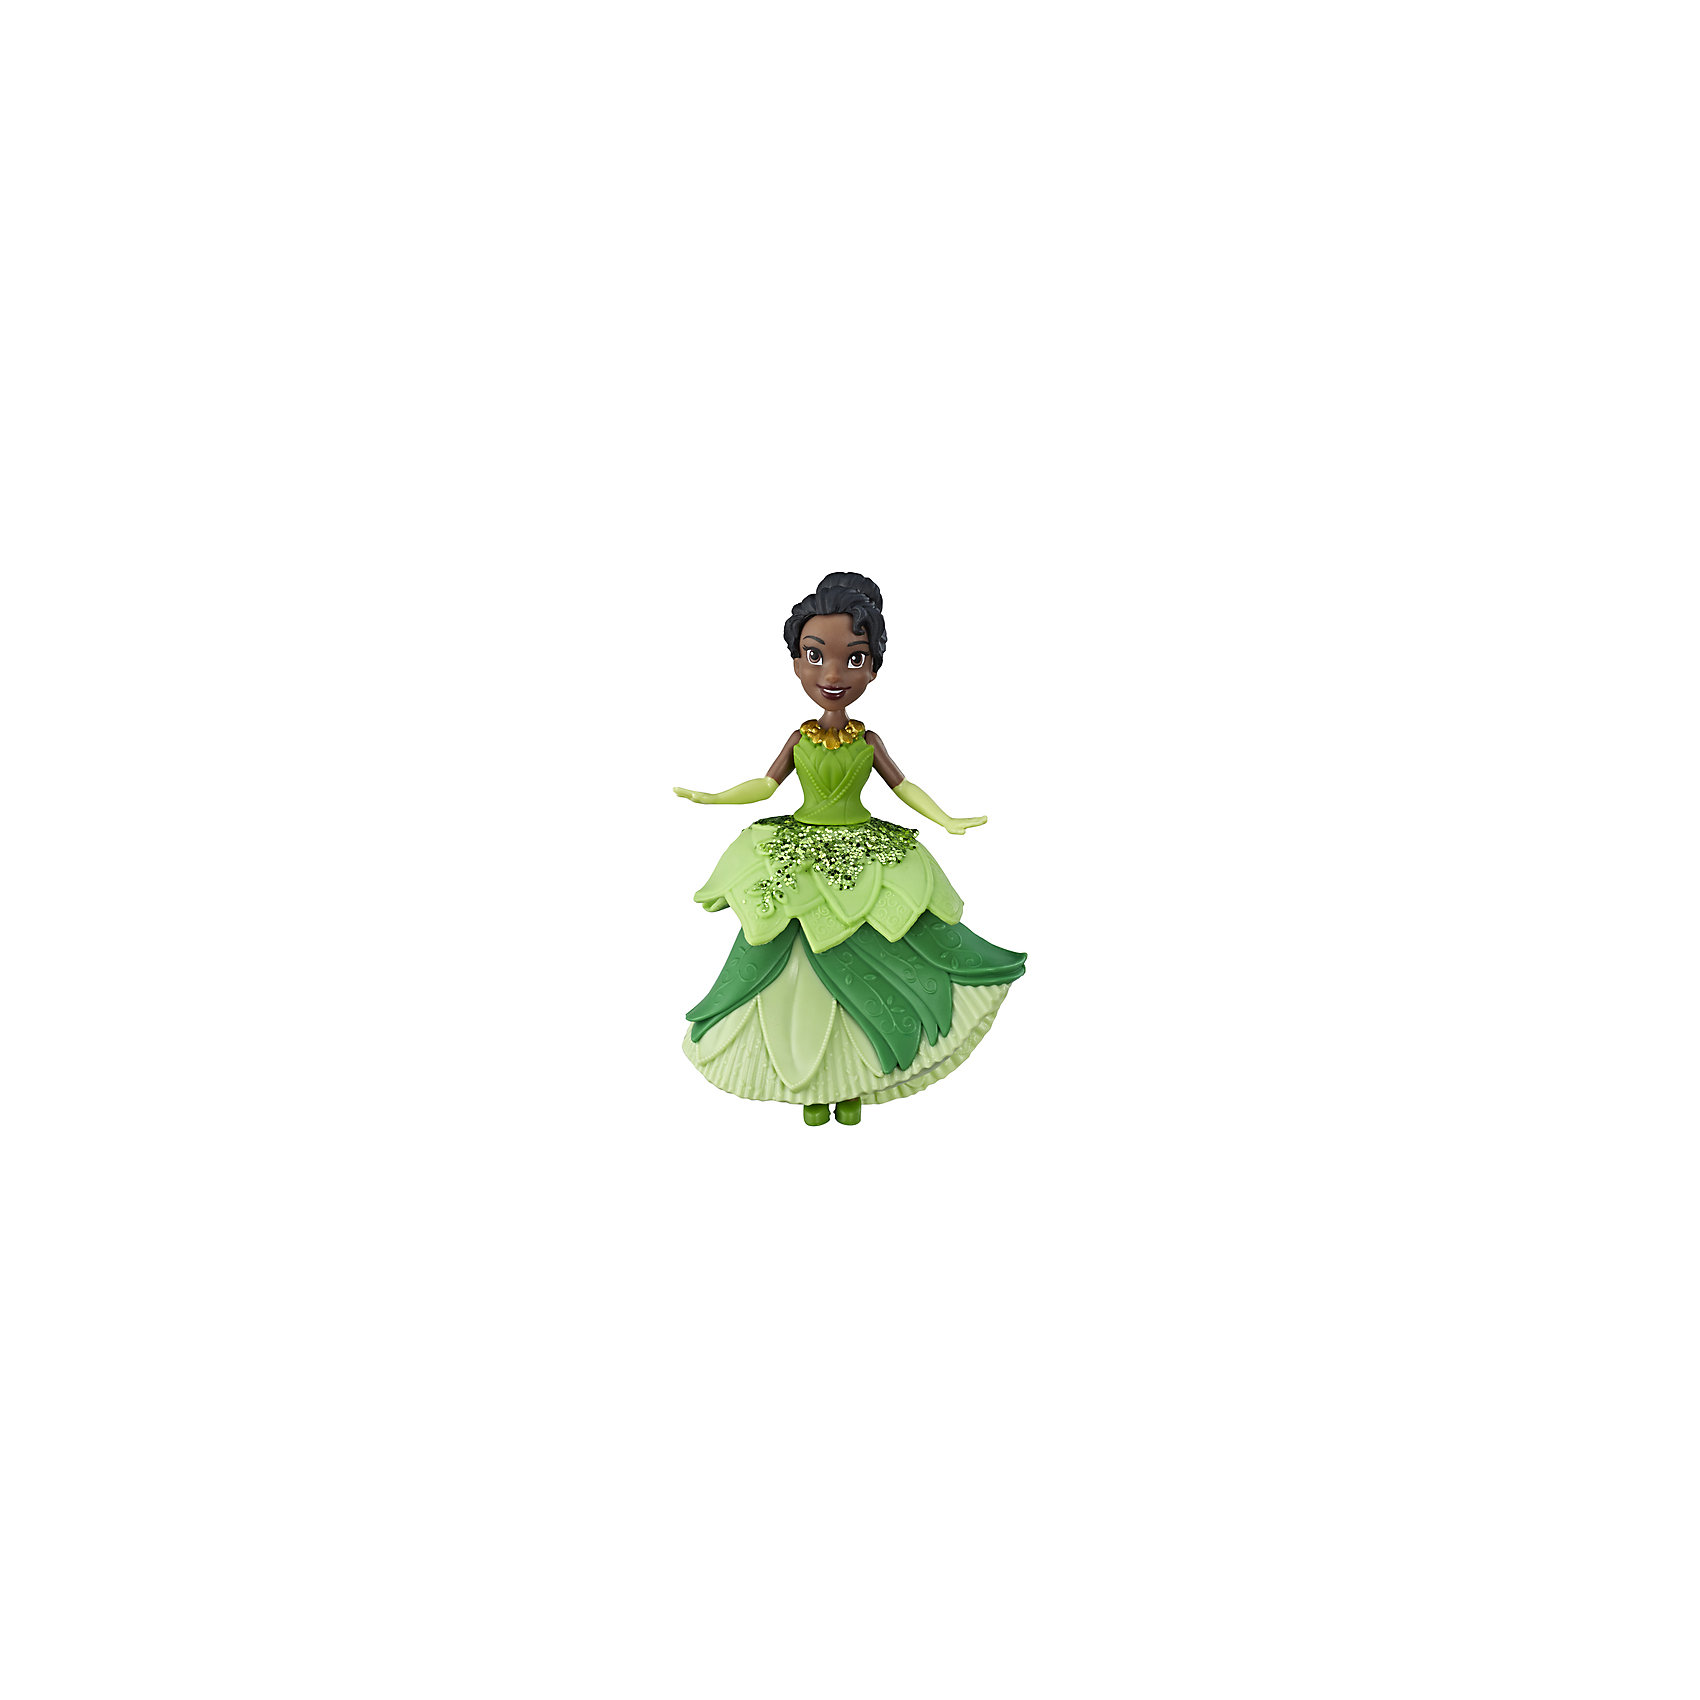 Игровая фигурка Disney Princess Royal Clips Тиана Hasbro 15189648